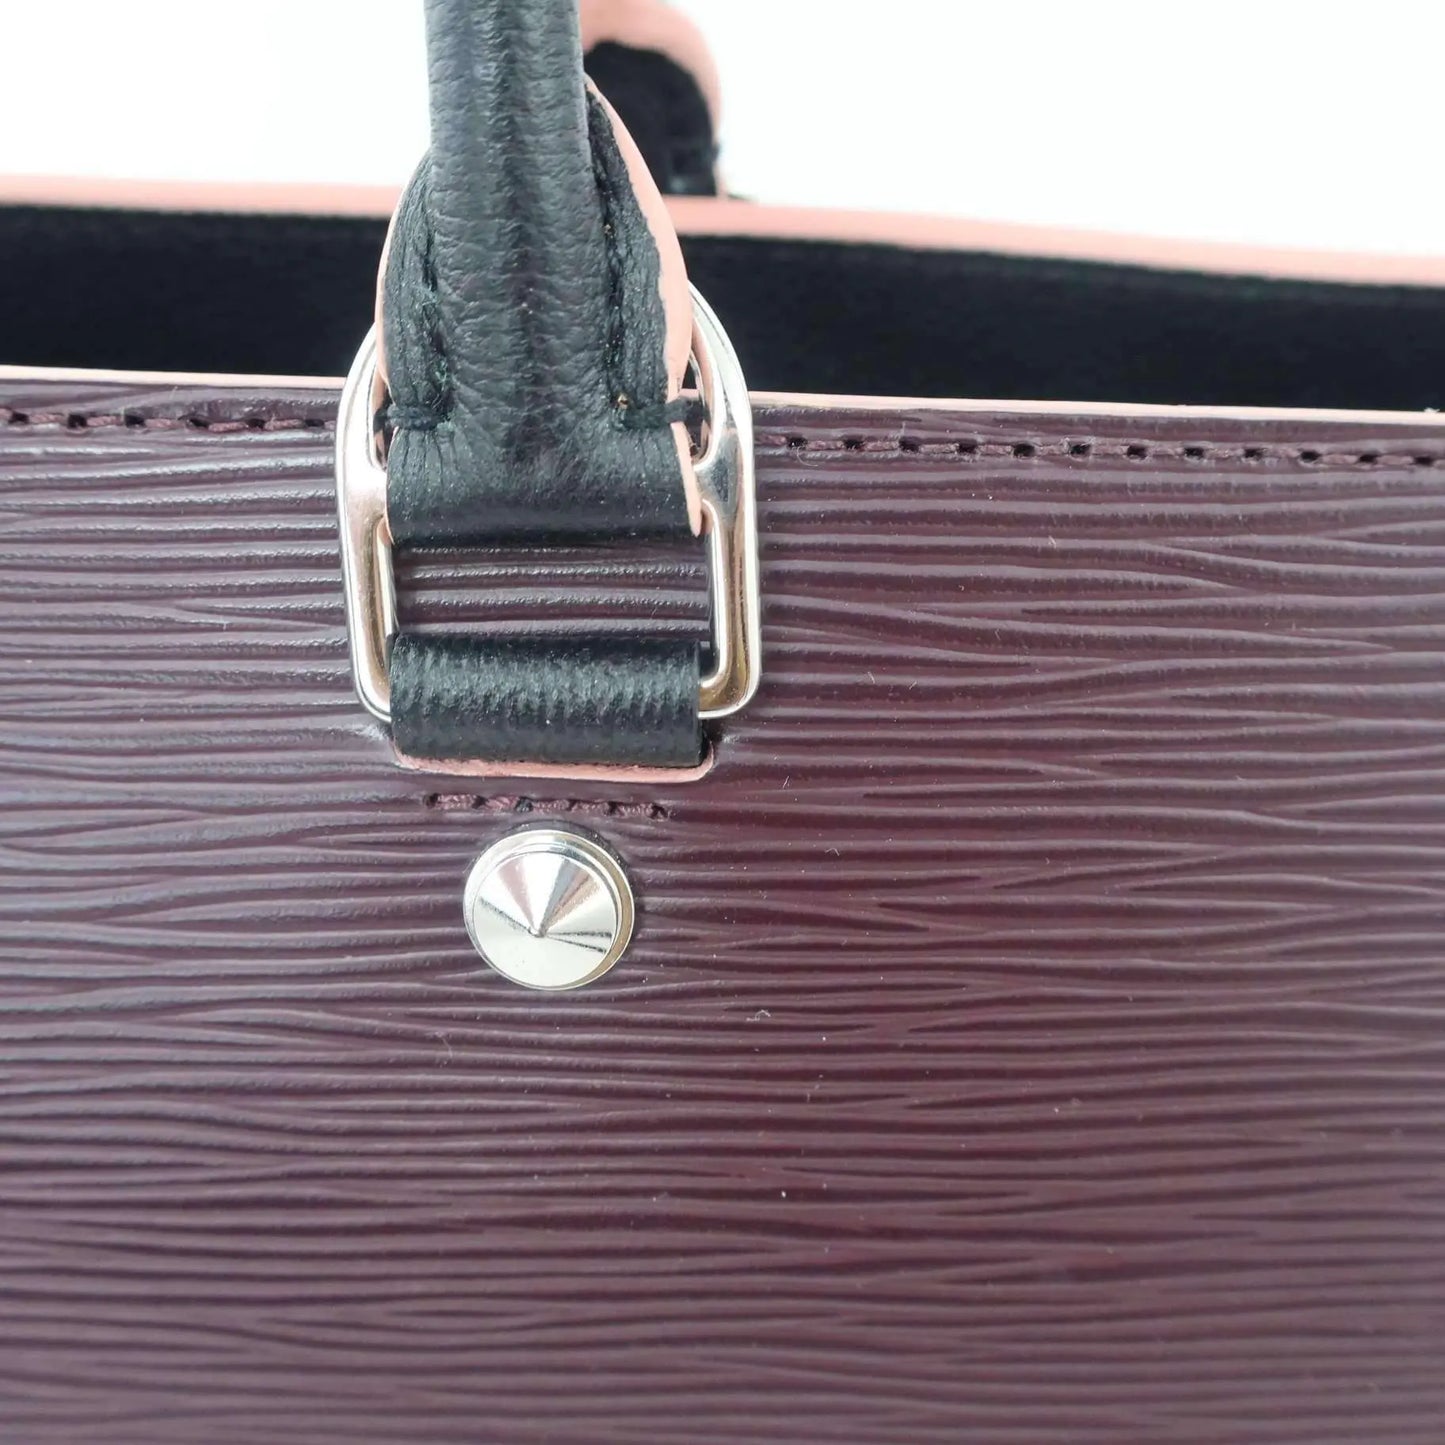 Load image into Gallery viewer, Louis Vuitton Louis Vuitton Vaneau GM Epi Leather Violet bag LVBagaholic
